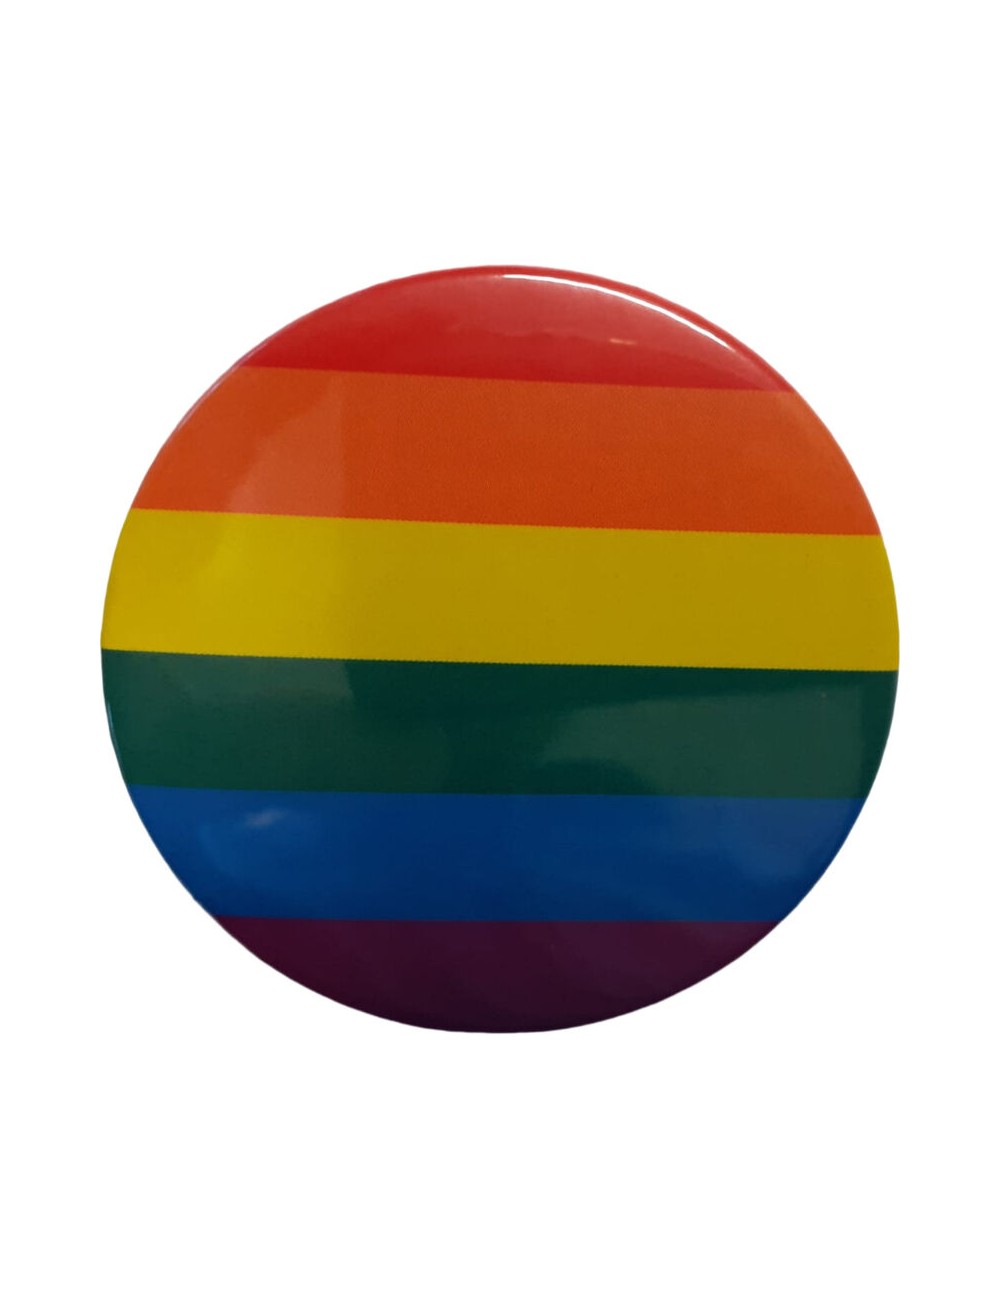 PRIDE - BOTTLE OPENER WITH LGBT FLAG MAGNET